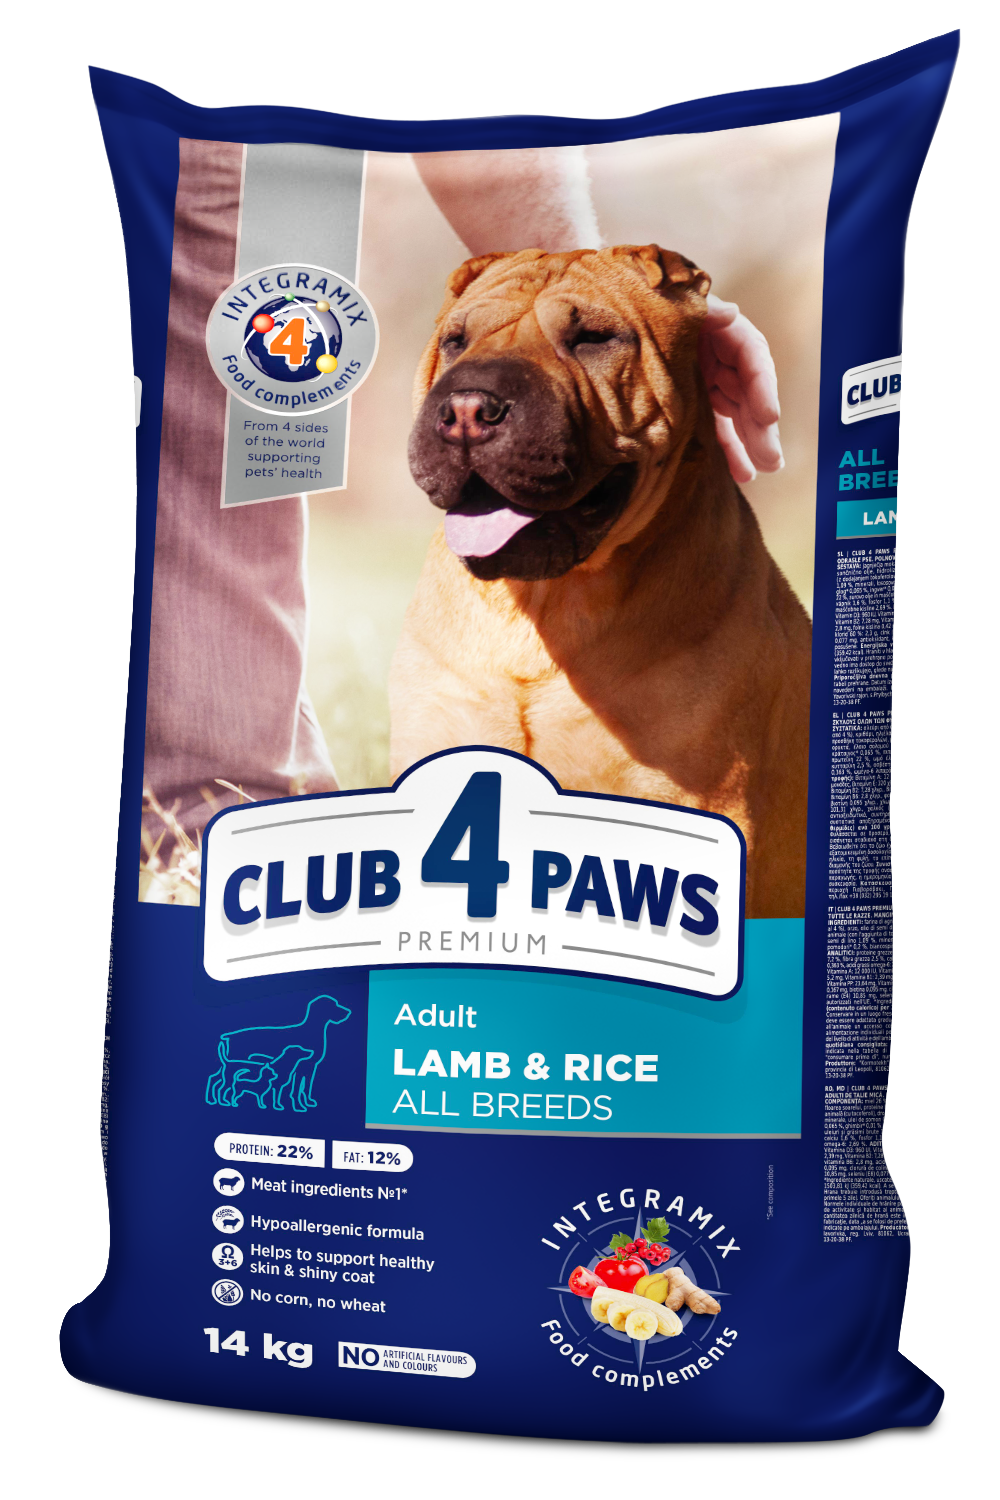 CLUB 4 PAWS Premium Lamb & Rice, All Breeds